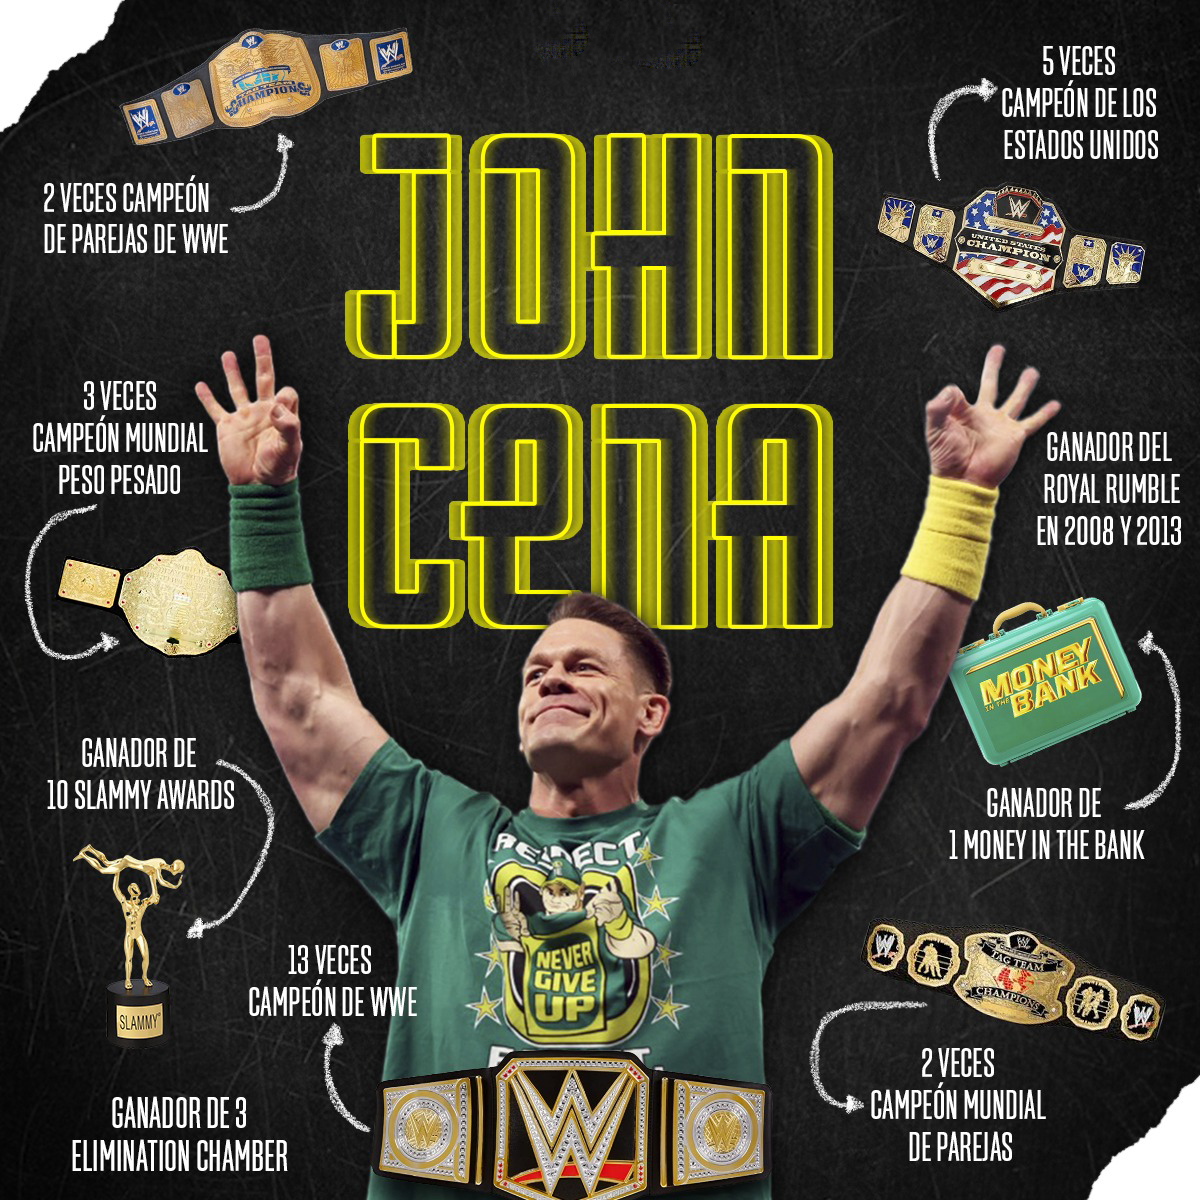 ¡John Cena está de fiesta! El más grande de la WWE cumple 20 años como profesional